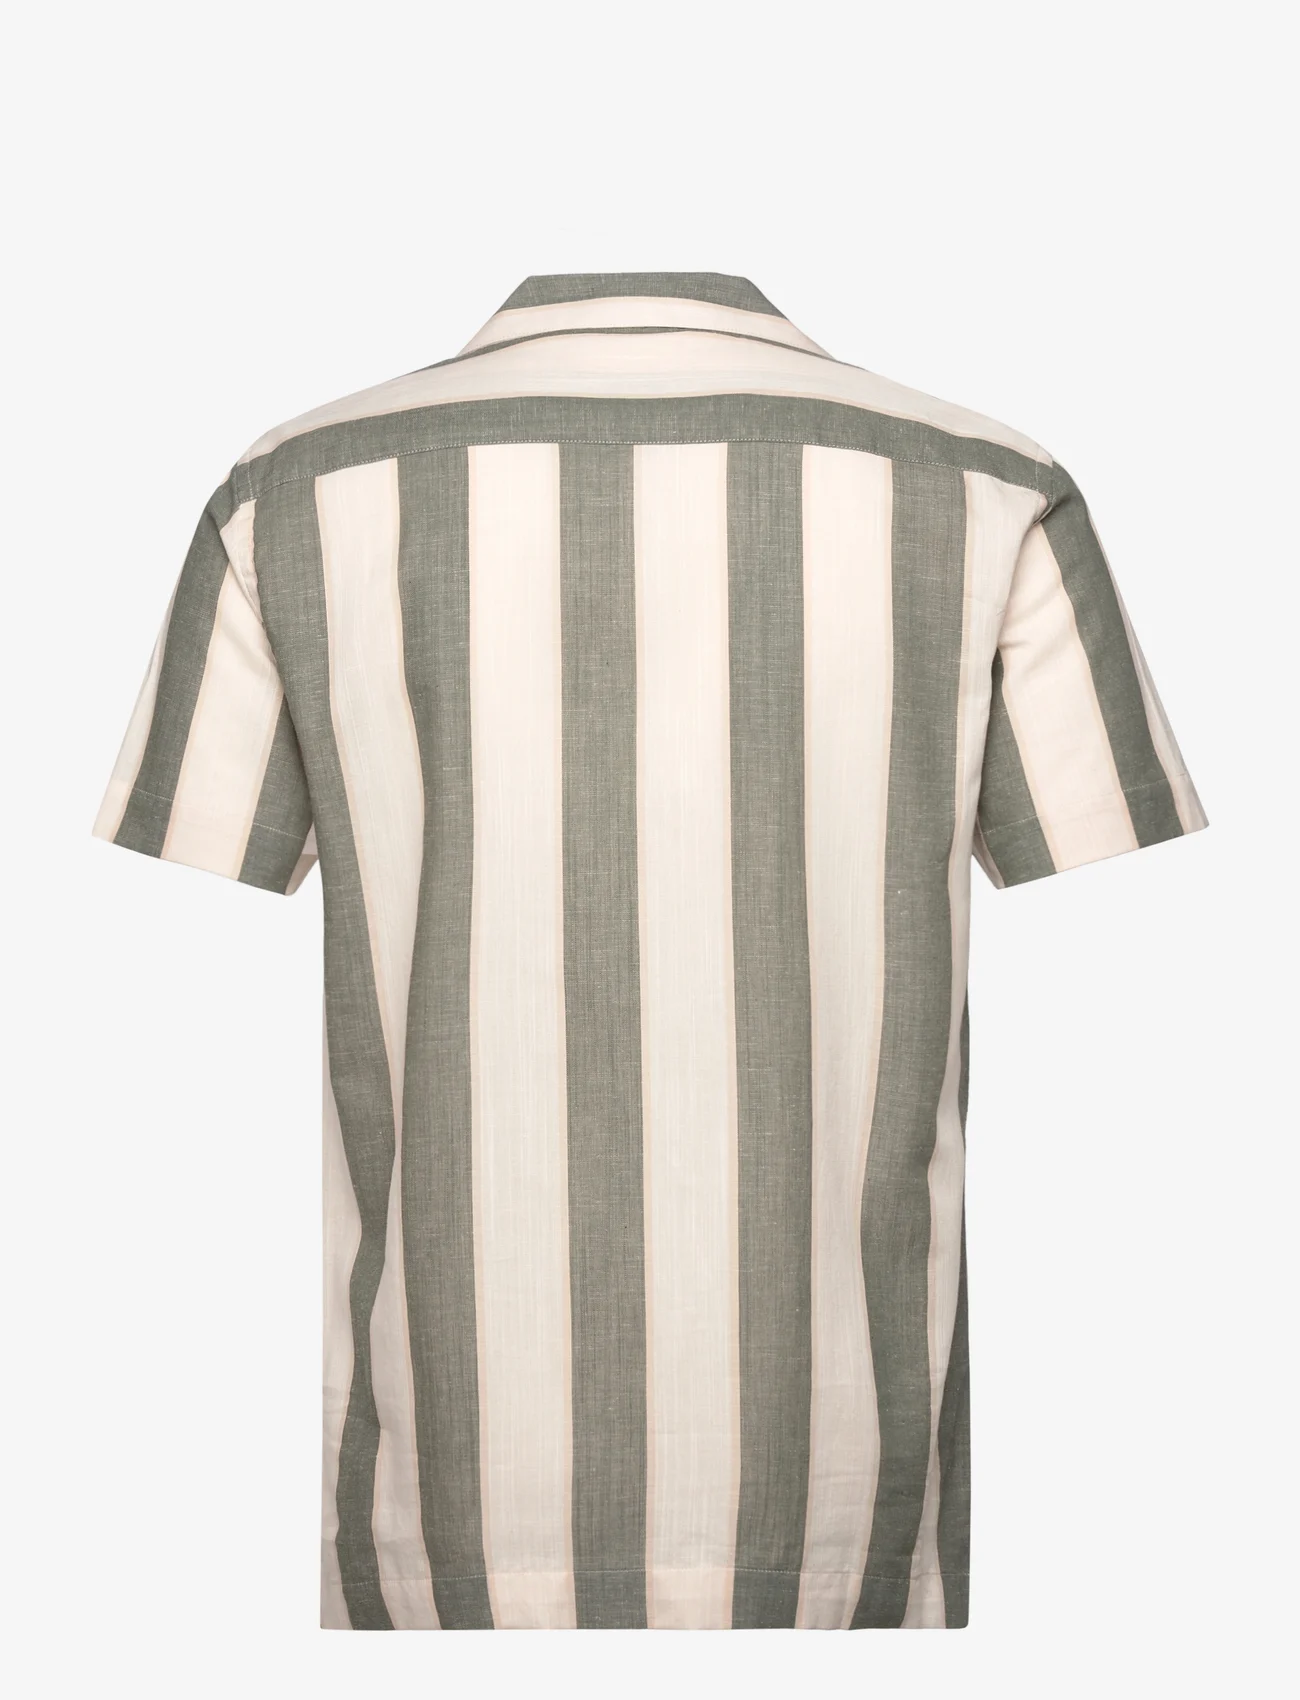 Lindbergh - Striped linen/cotton shirt S/S - kurzarmhemden - army - 1